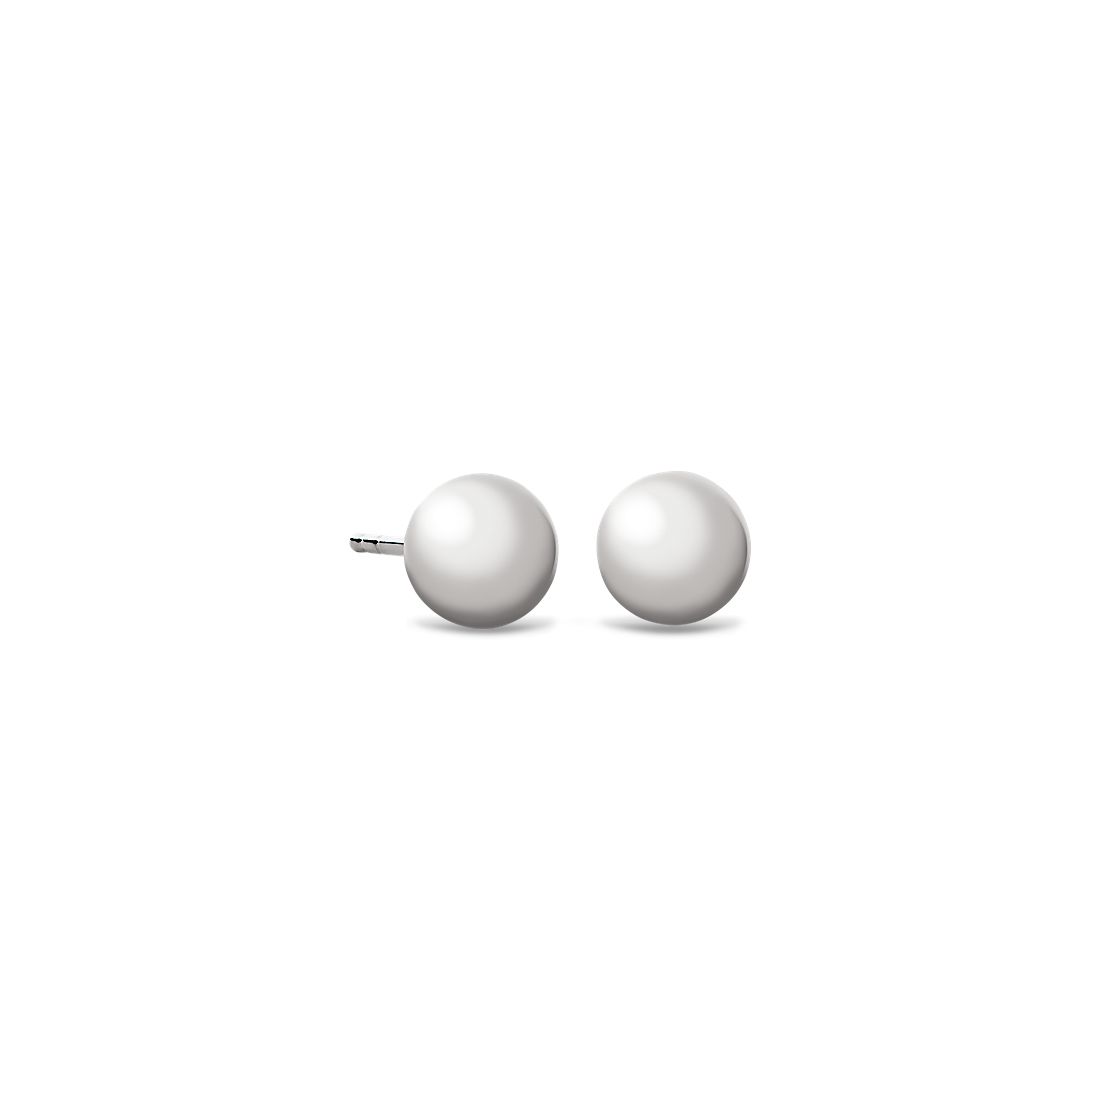 Bead Ball Stud Earrings in 14k White Gold (6mm)